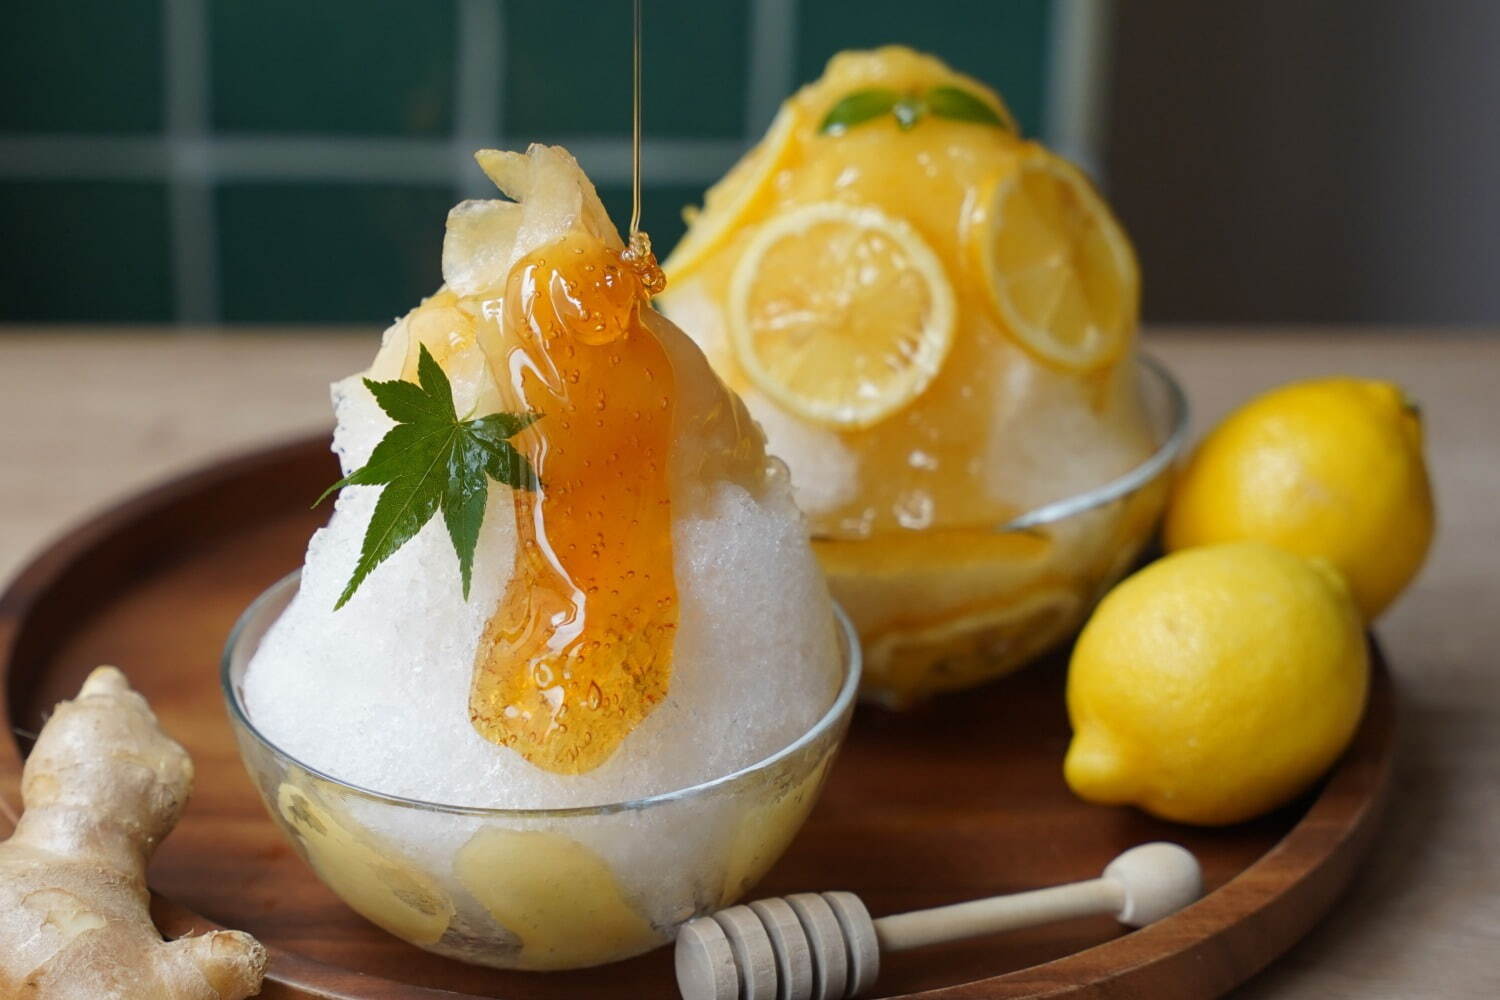 「自家製蜂蜜漬けのかき氷」
左から)「ハニージンジャーかき氷」、「ハニーレモンかき氷」各990円